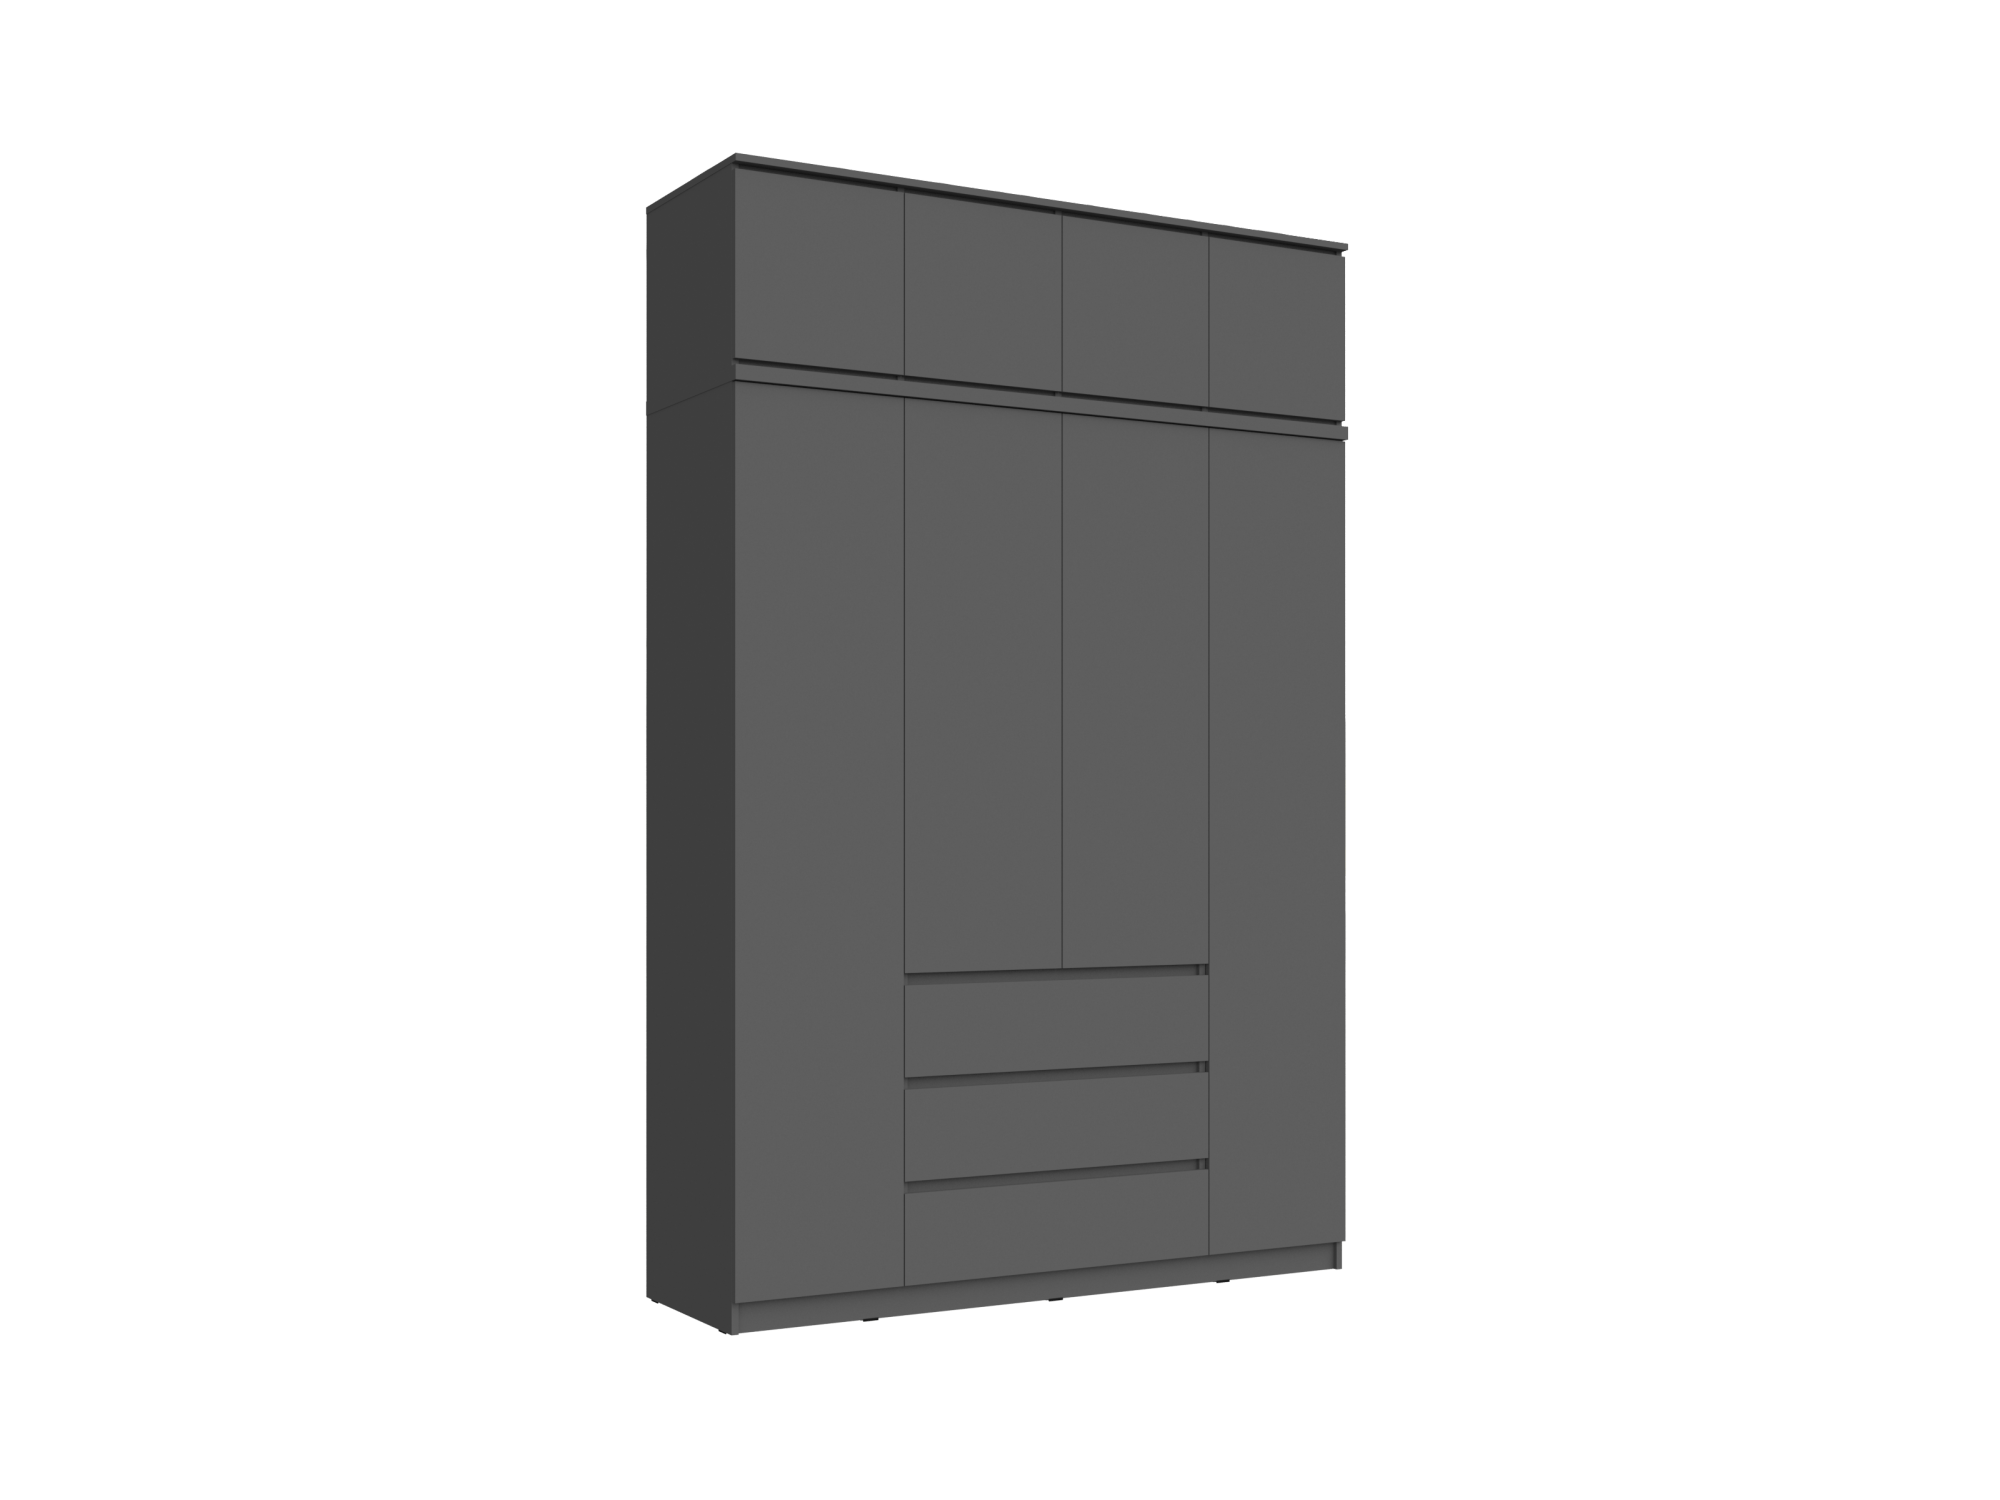 Челси Шкаф 1600 + антресоль 1600 (Графит, Графит) Черный, ЛДСП челси шкаф 1200 антресоль 1200 графит графит черный лдсп